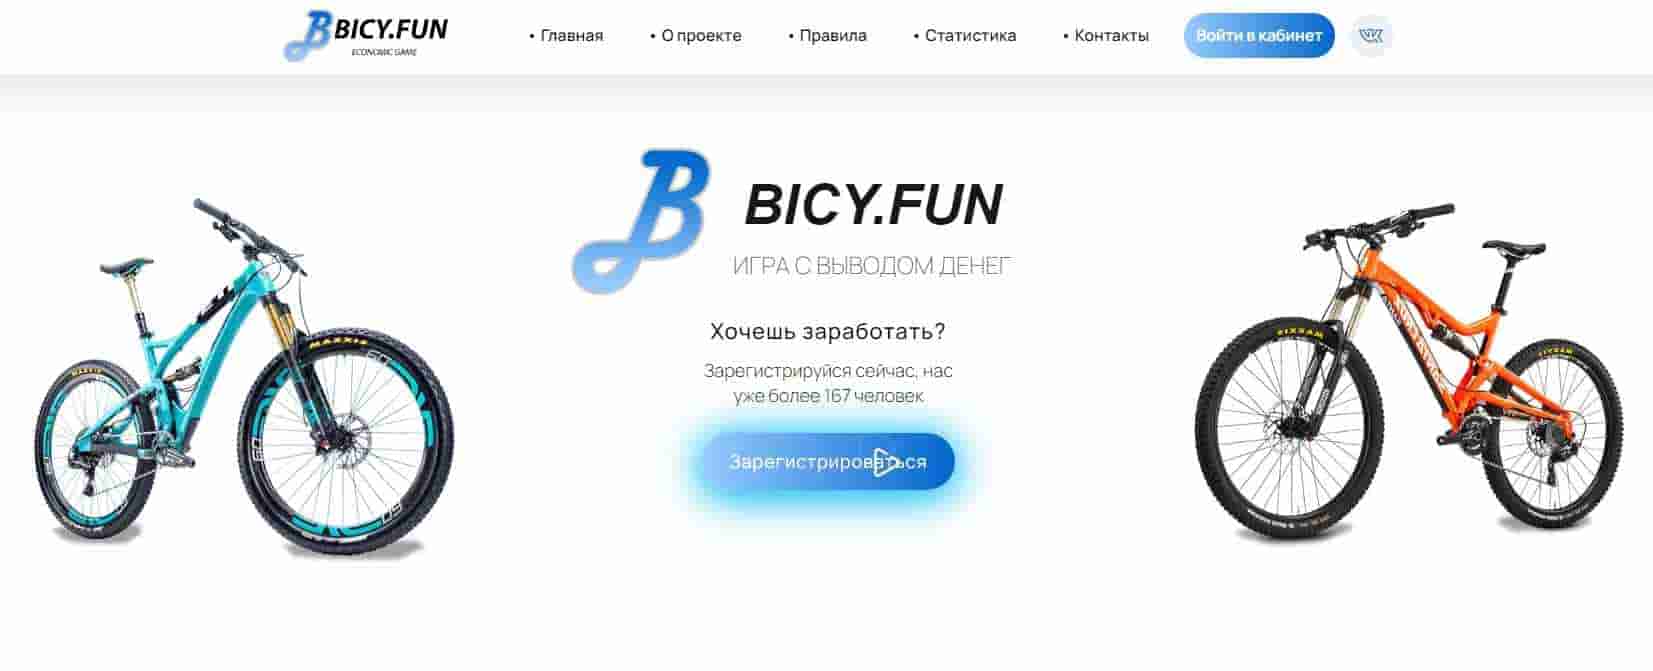 Bicyfun